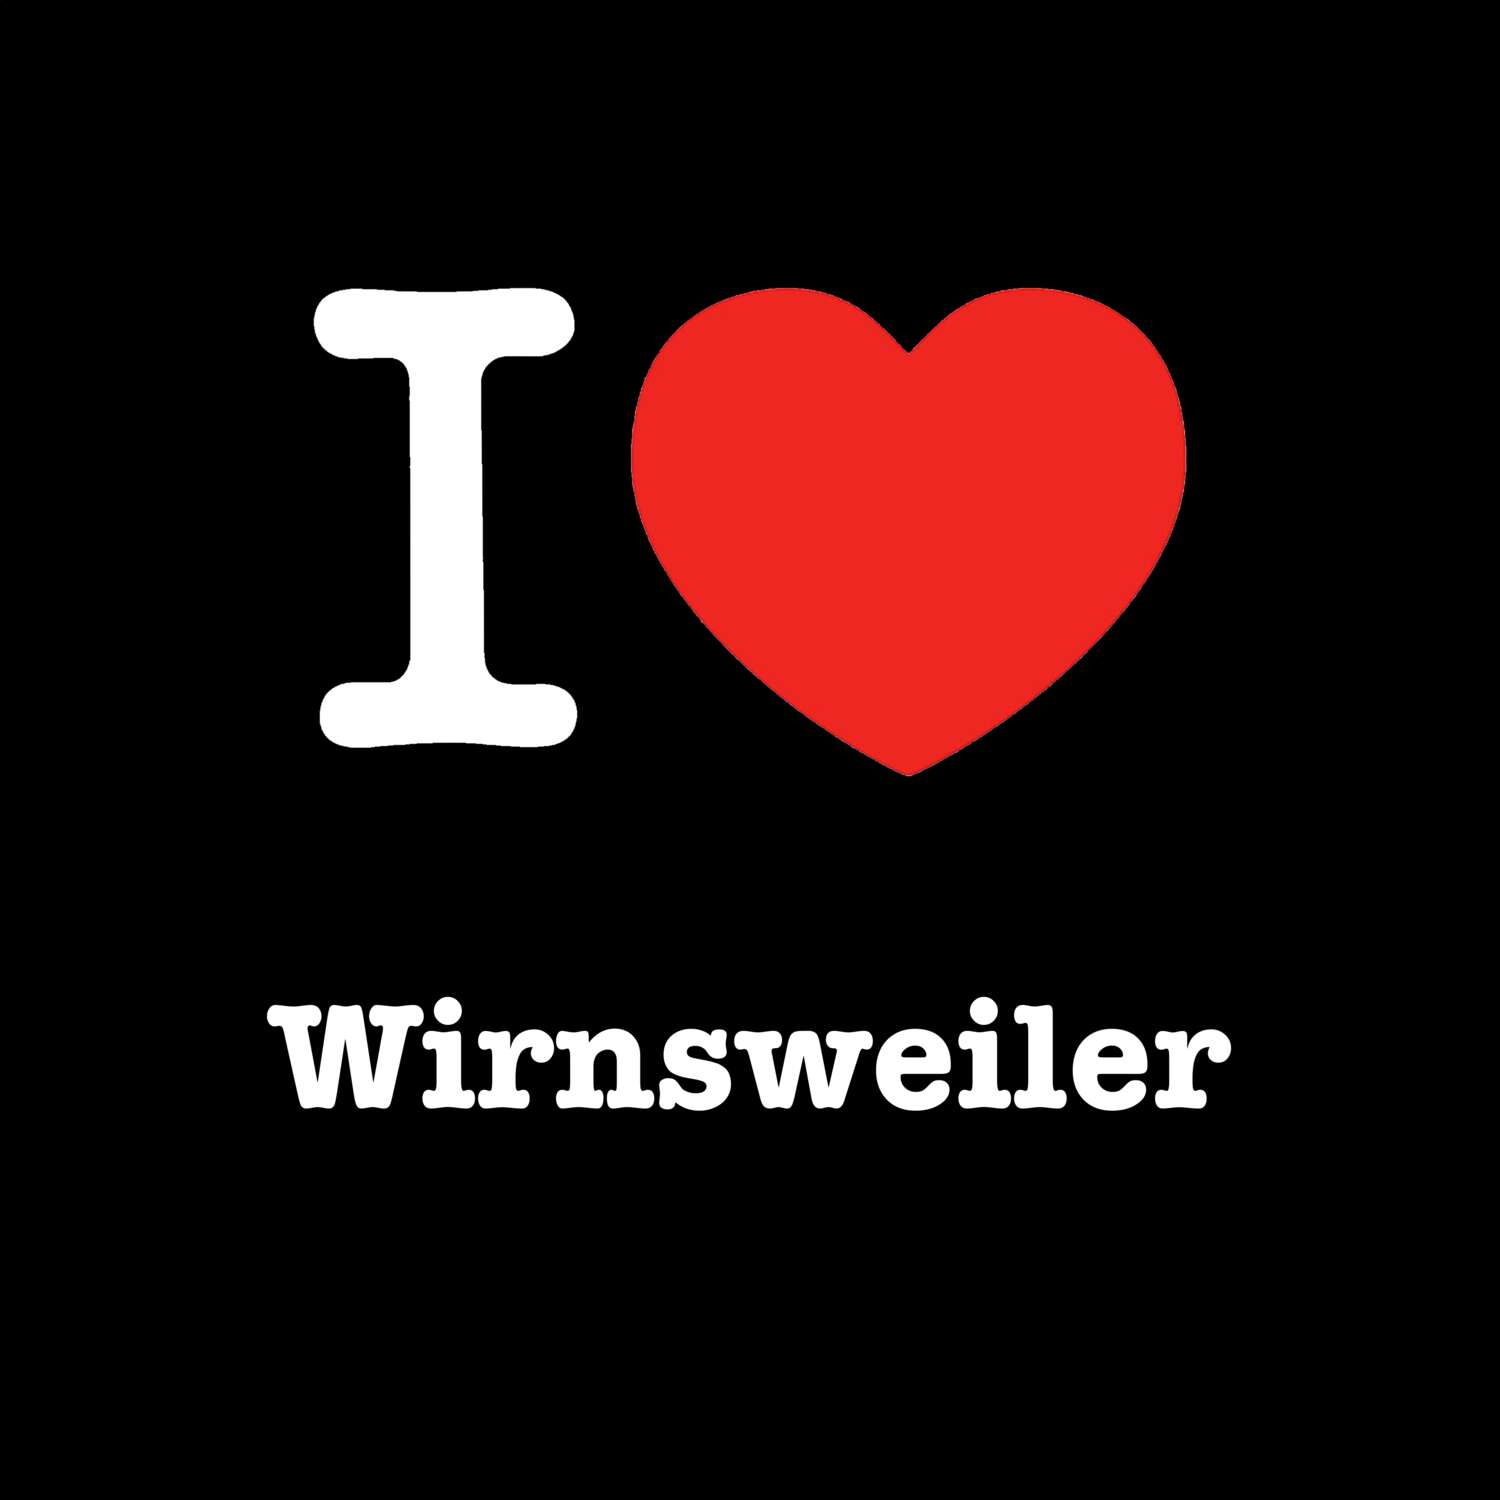 Wirnsweiler T-Shirt »I love«